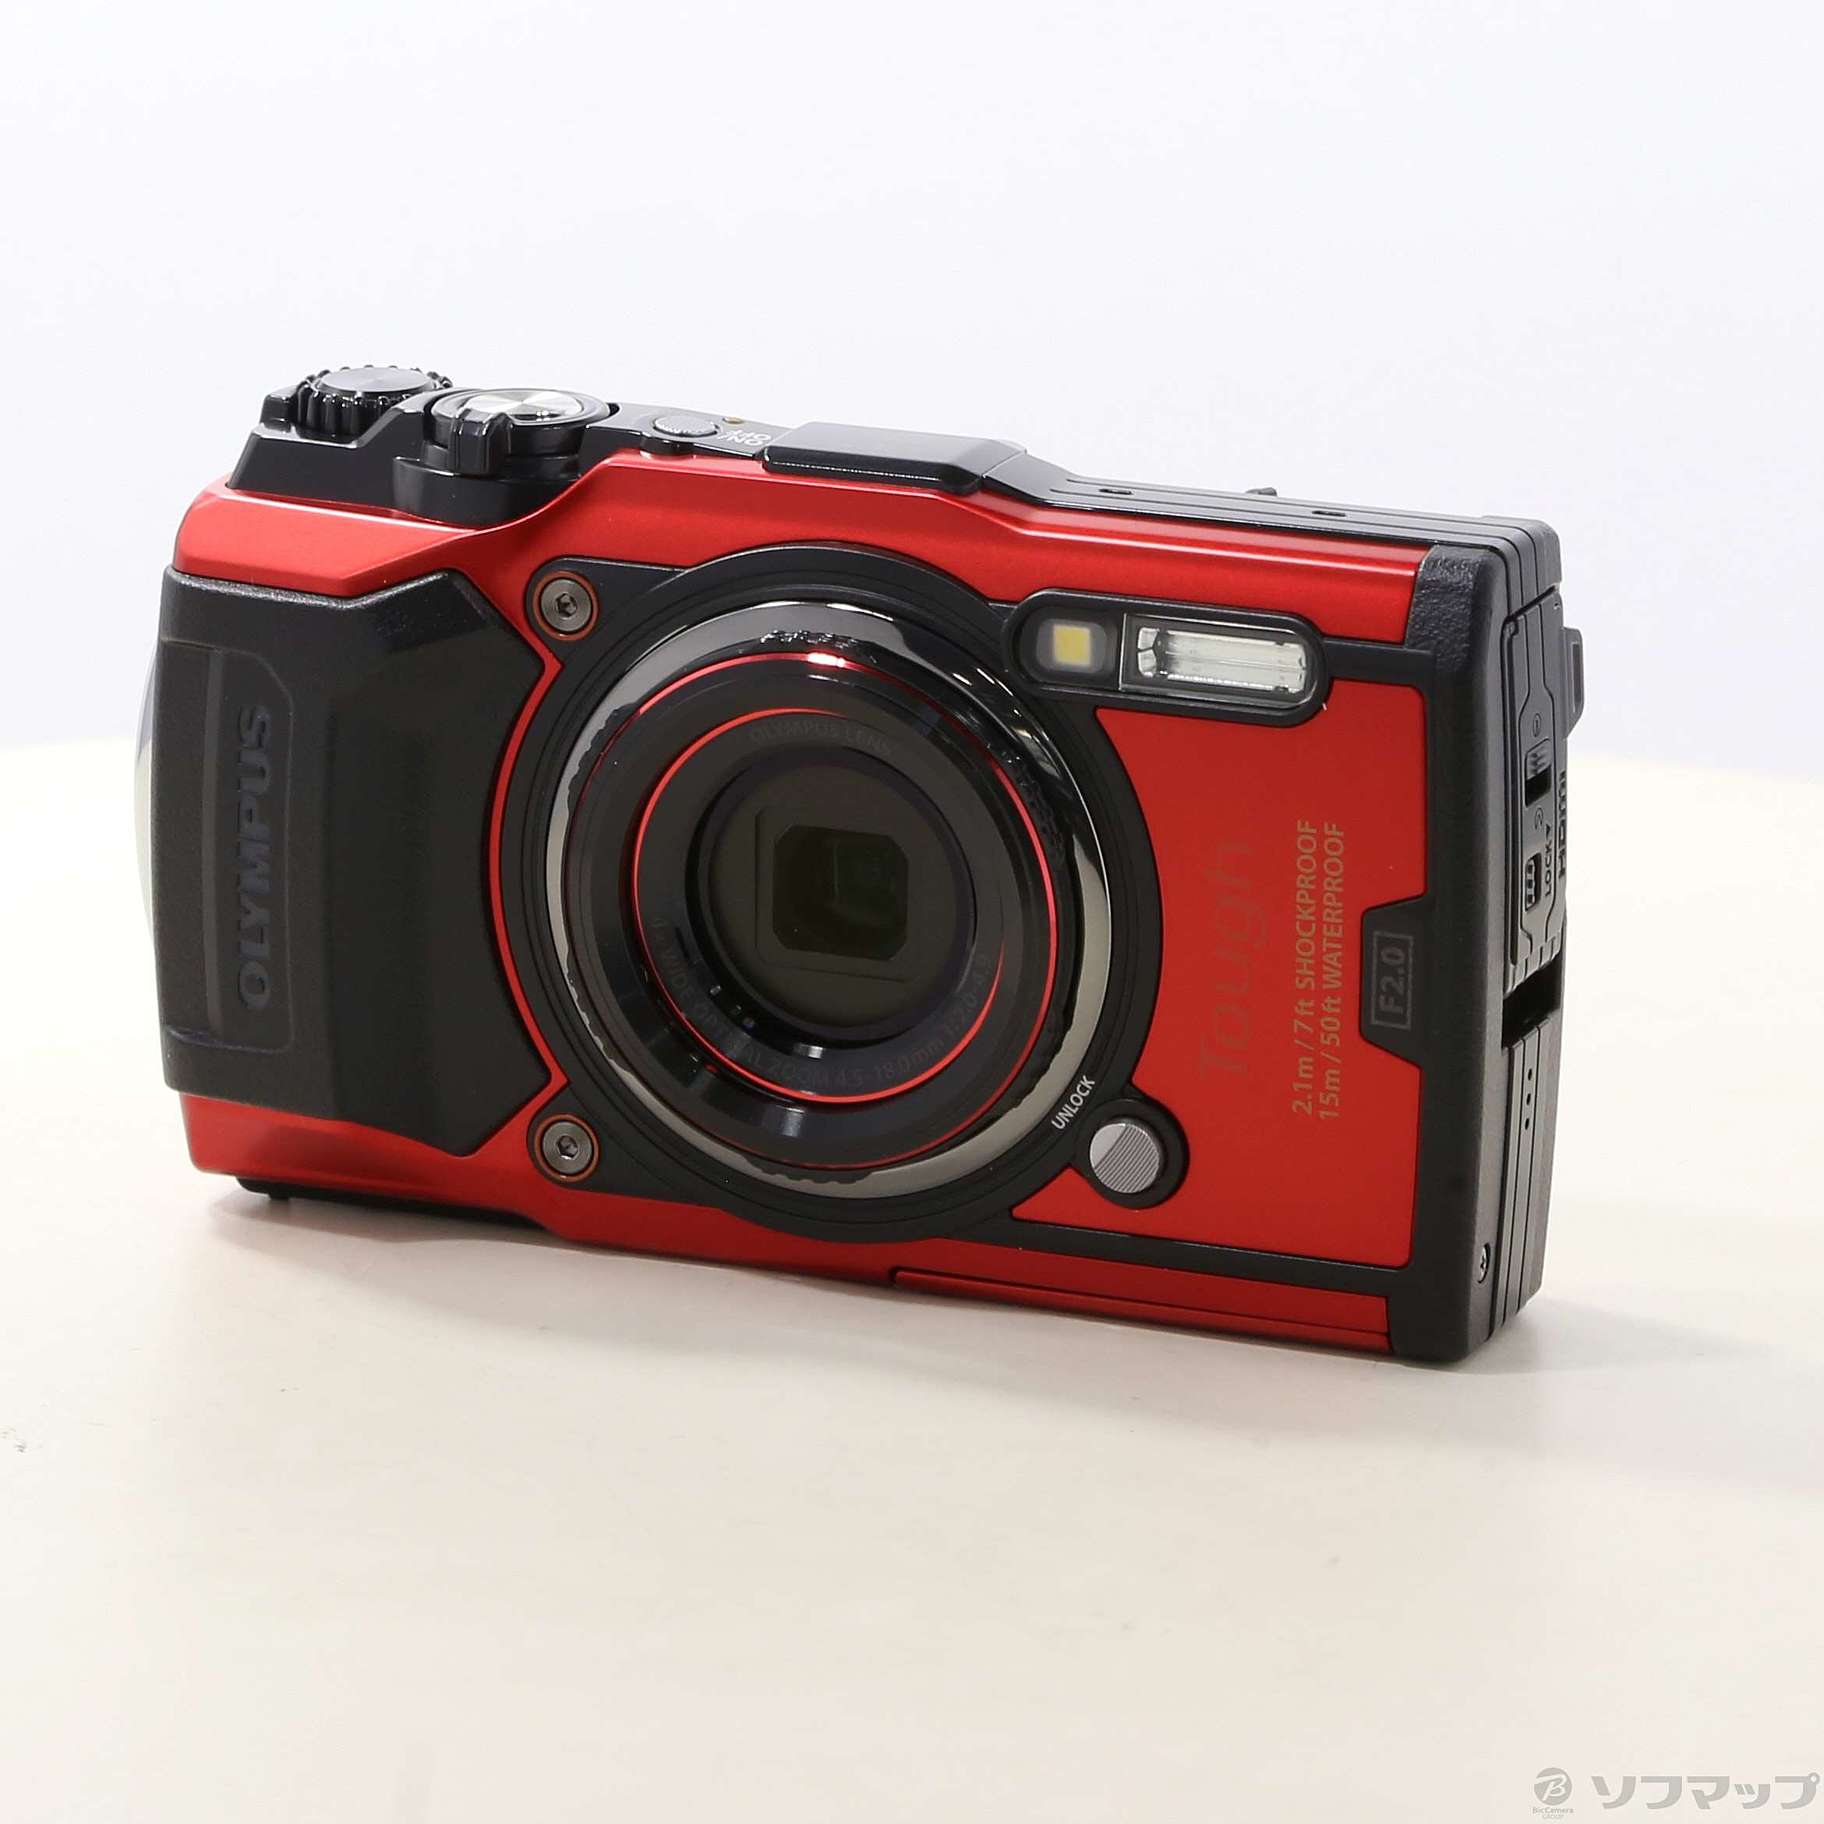 オリンパス Tough TG-6 レッド - コンパクトデジタルカメラ